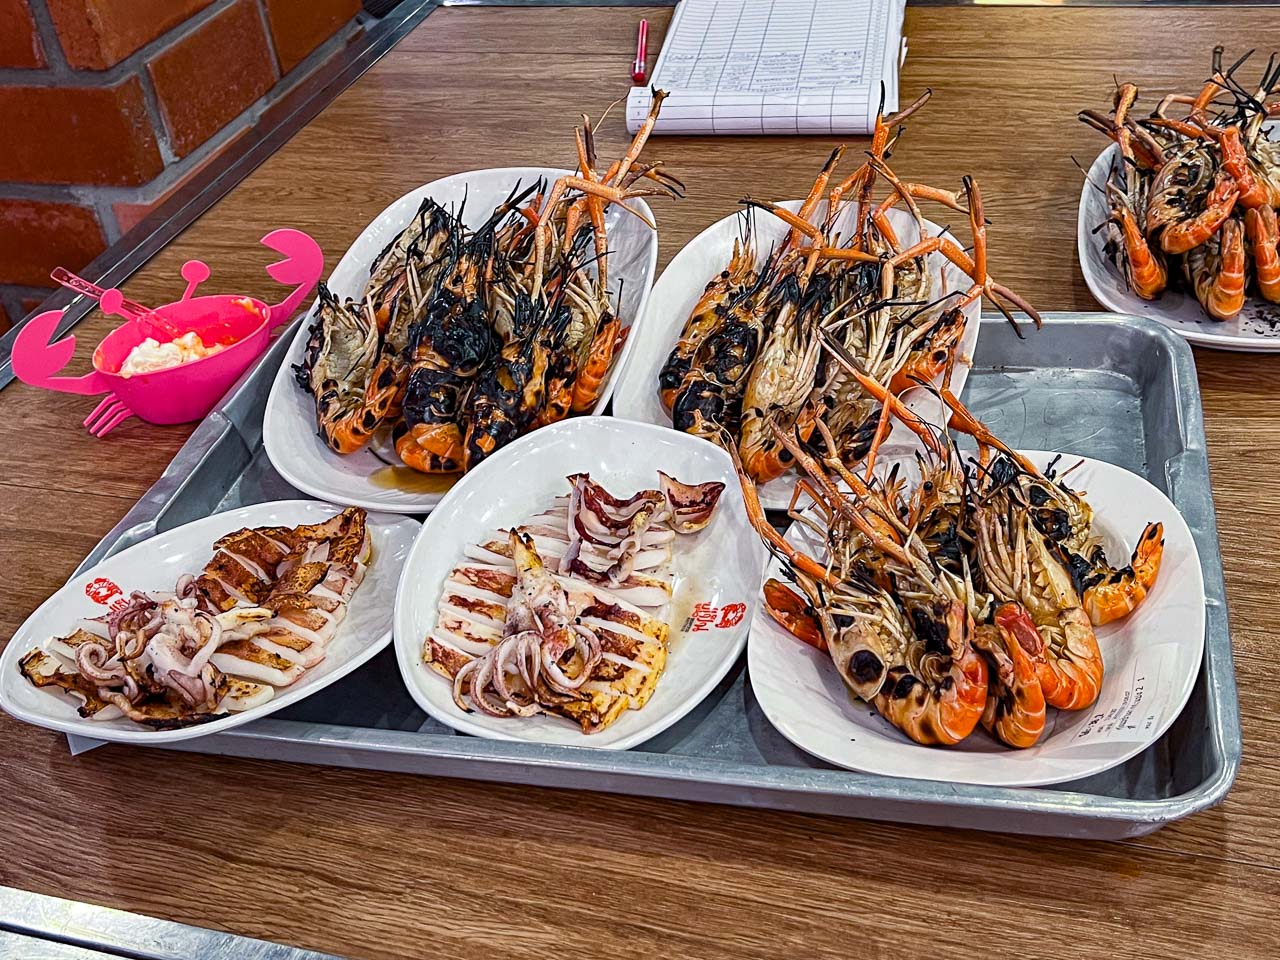 芭達雅海鮮餐廳,泰國海鮮餐廳,泰國美食,芭達雅美食,Pupen Seafood